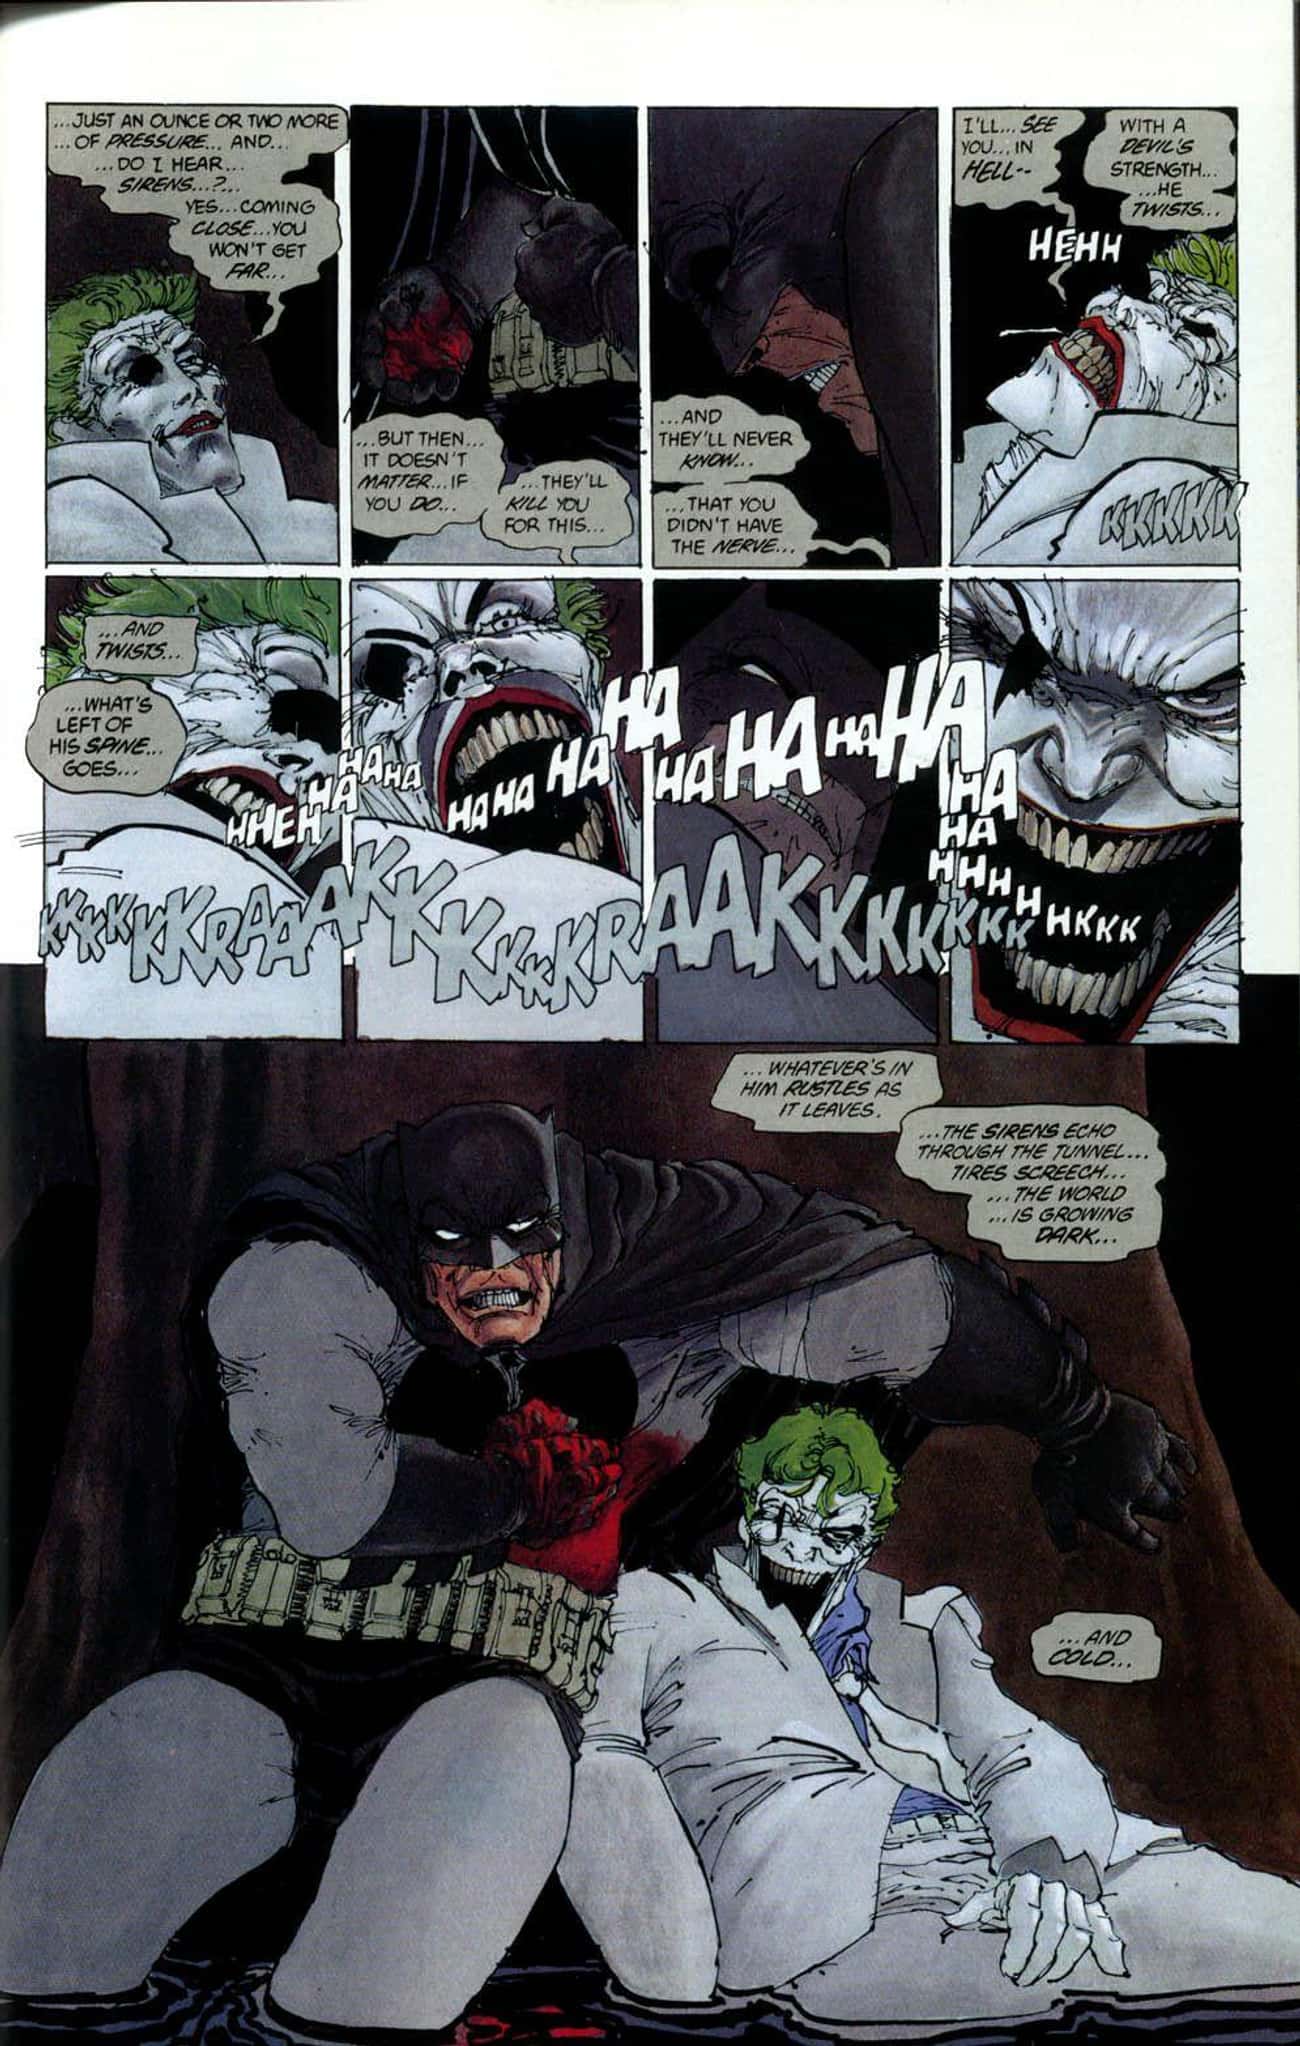 The Joker Breaks His Own Neck